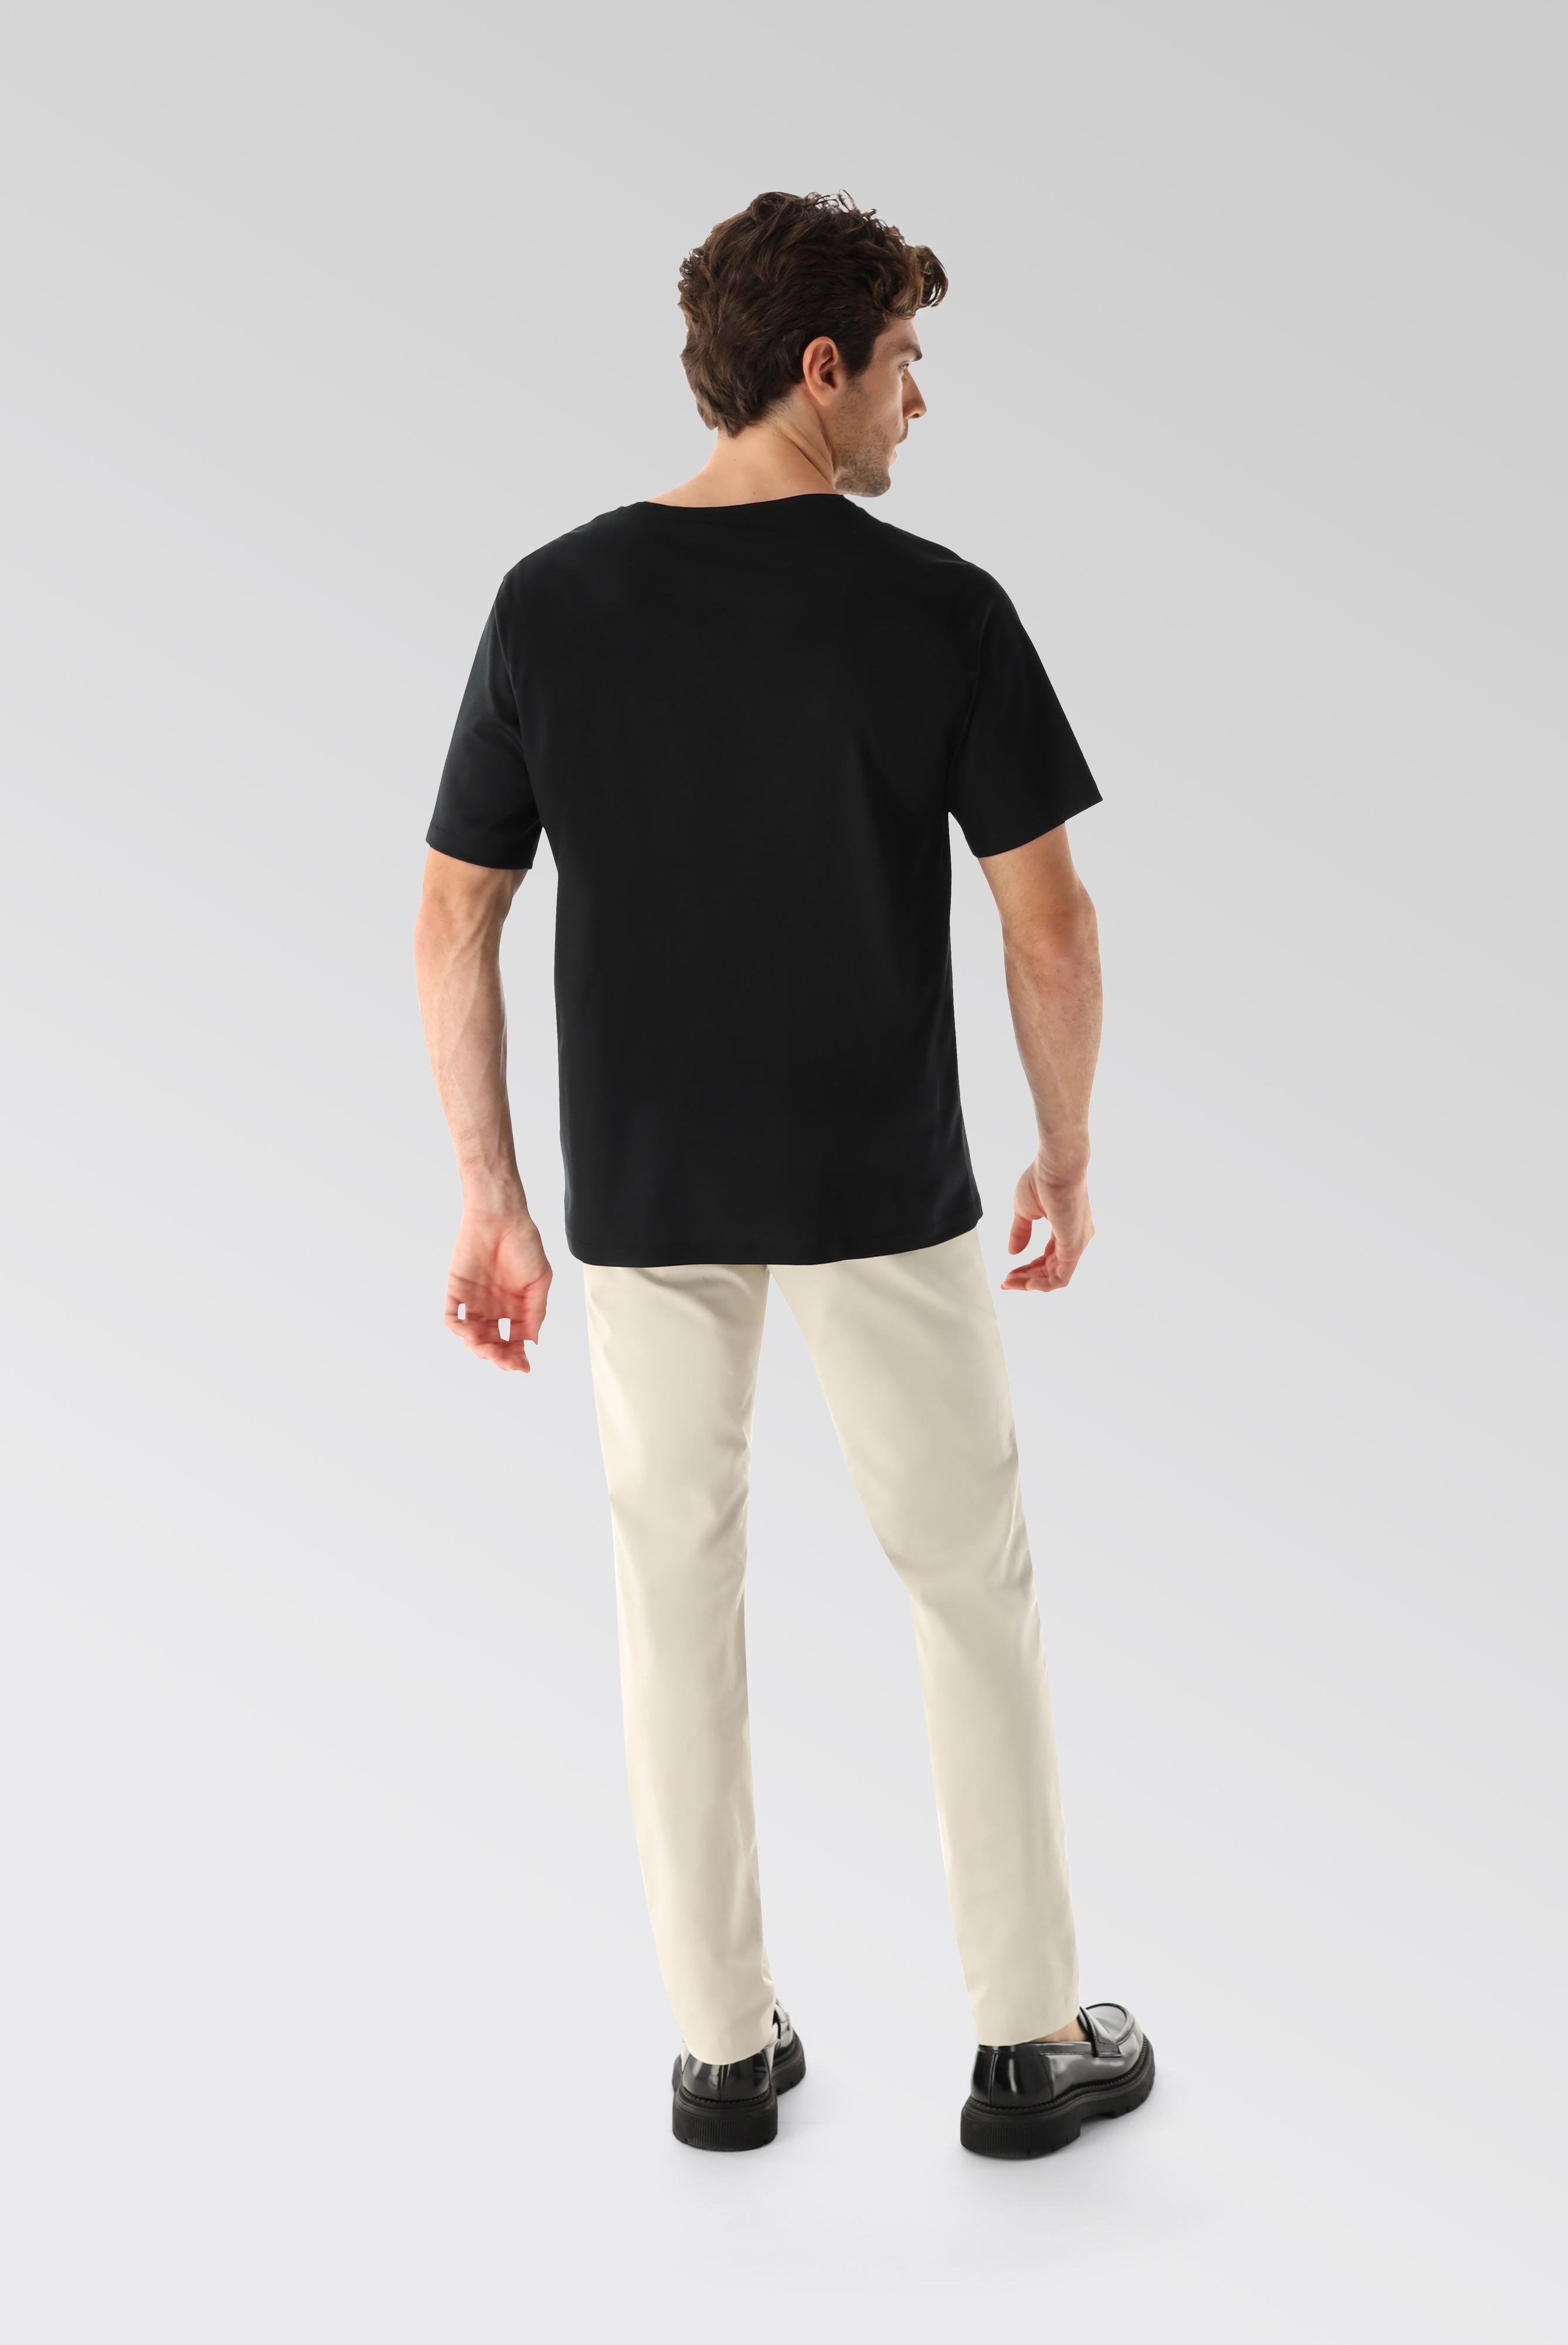 T-Shirts+Oversize Jersey T-Shirt mit Brusttasche+20.1776.GZ.180031.099.S